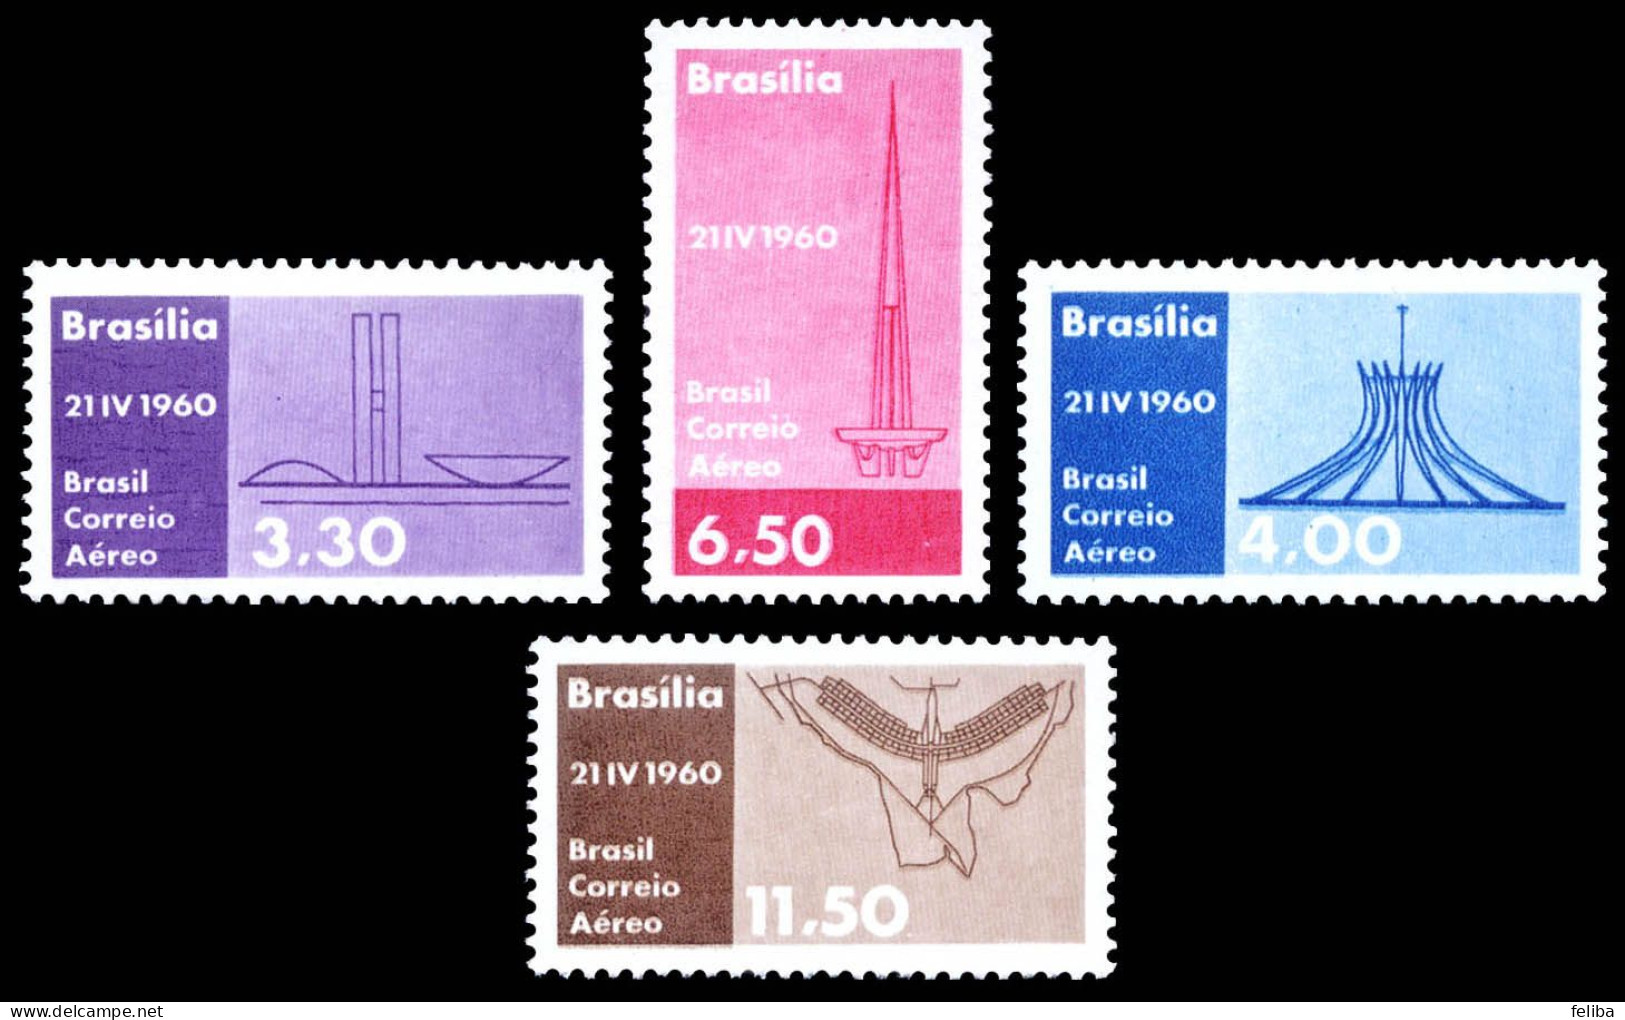 Brazil 1960 Airmail Unused - Posta Aerea